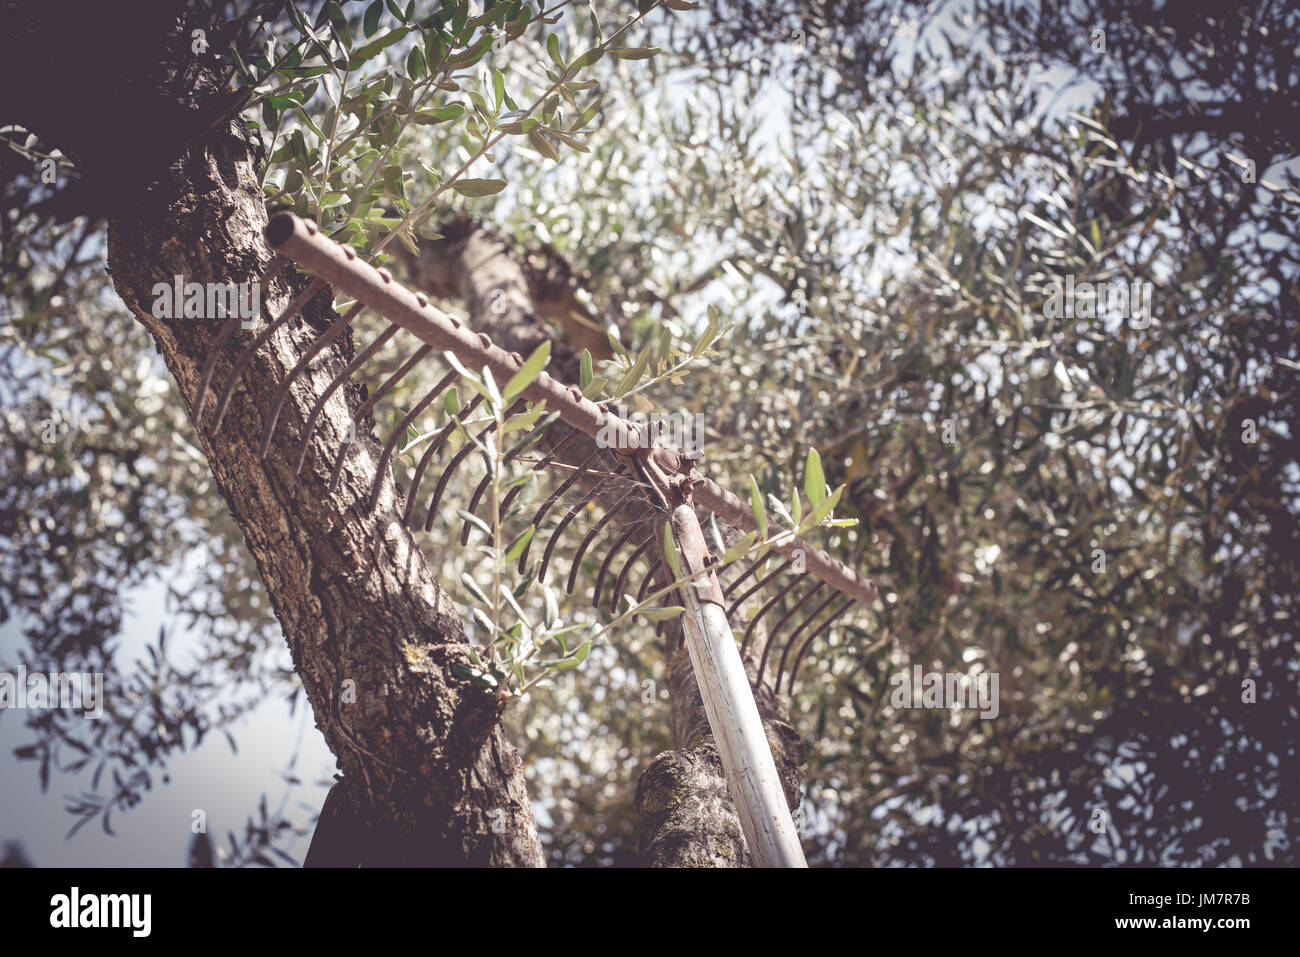 Concept d'emplois agricoles, travail physique, vieux râteau abandonné sur tronc d'arbre d'olive Banque D'Images